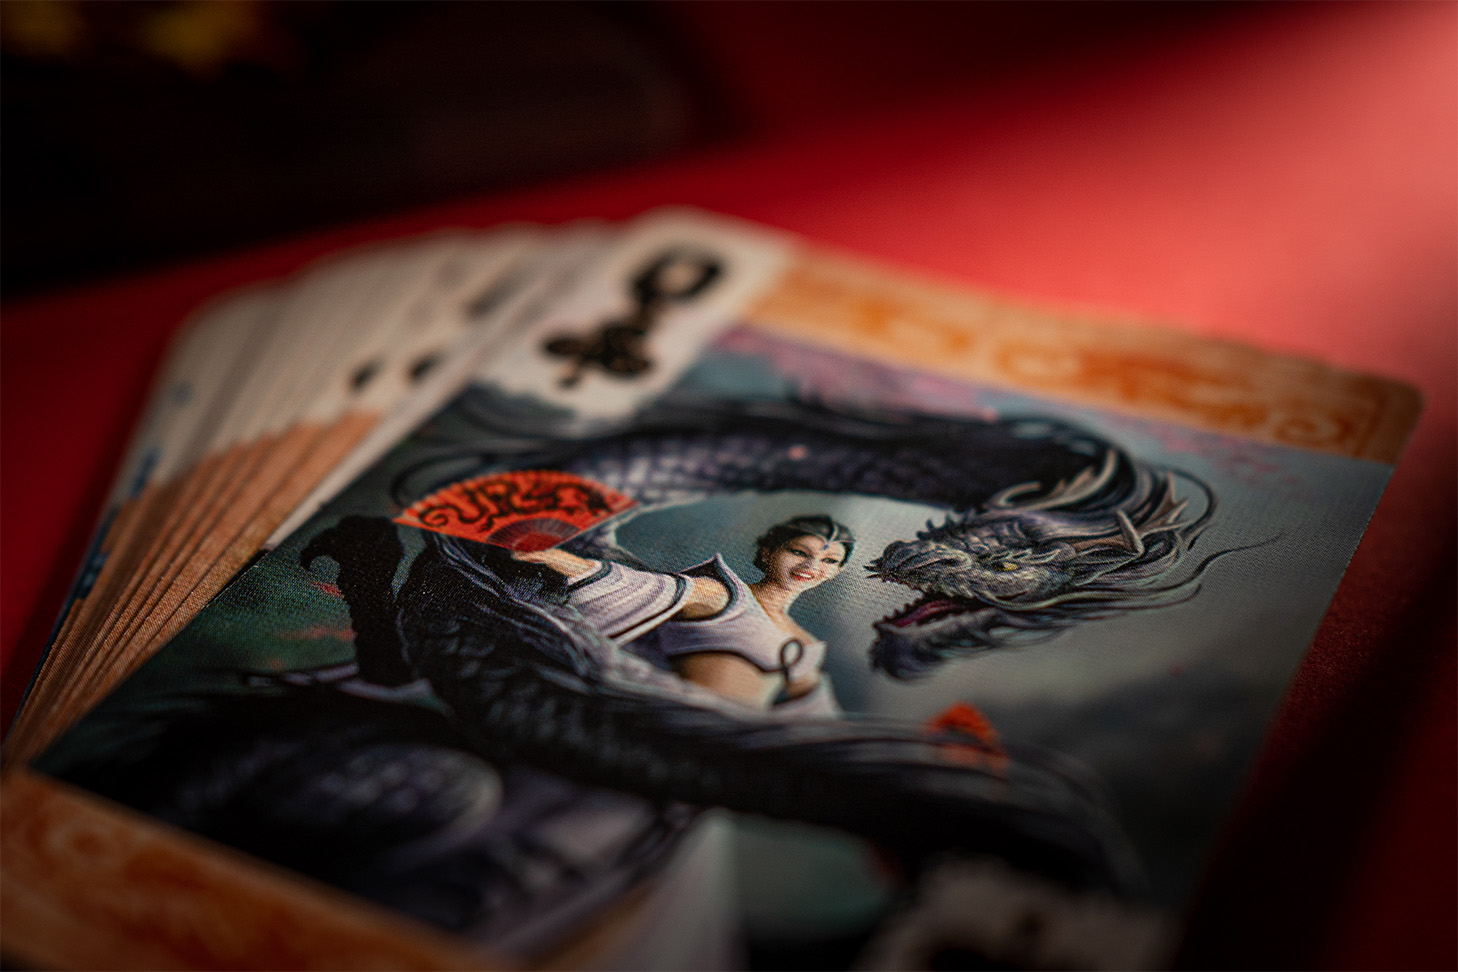 Die Bicycle® Age of Dragons Königin mit einem majestätischen Drachen: Das atemberaubende Design dieser Spielkarte lässt jedes Kartenspiel zu einem Abenteuer werden. Diese exklusiven Spielkarten eignen sich perfekt für gute Kartenspiele, Zauberkarten und Magie. Bestellen Sie jetzt die Bicycle® Age of Dragons Spielkarten und erleben Sie unvergessliche Spieleabende mit einem Hauch von Fantasie und Abenteuer!